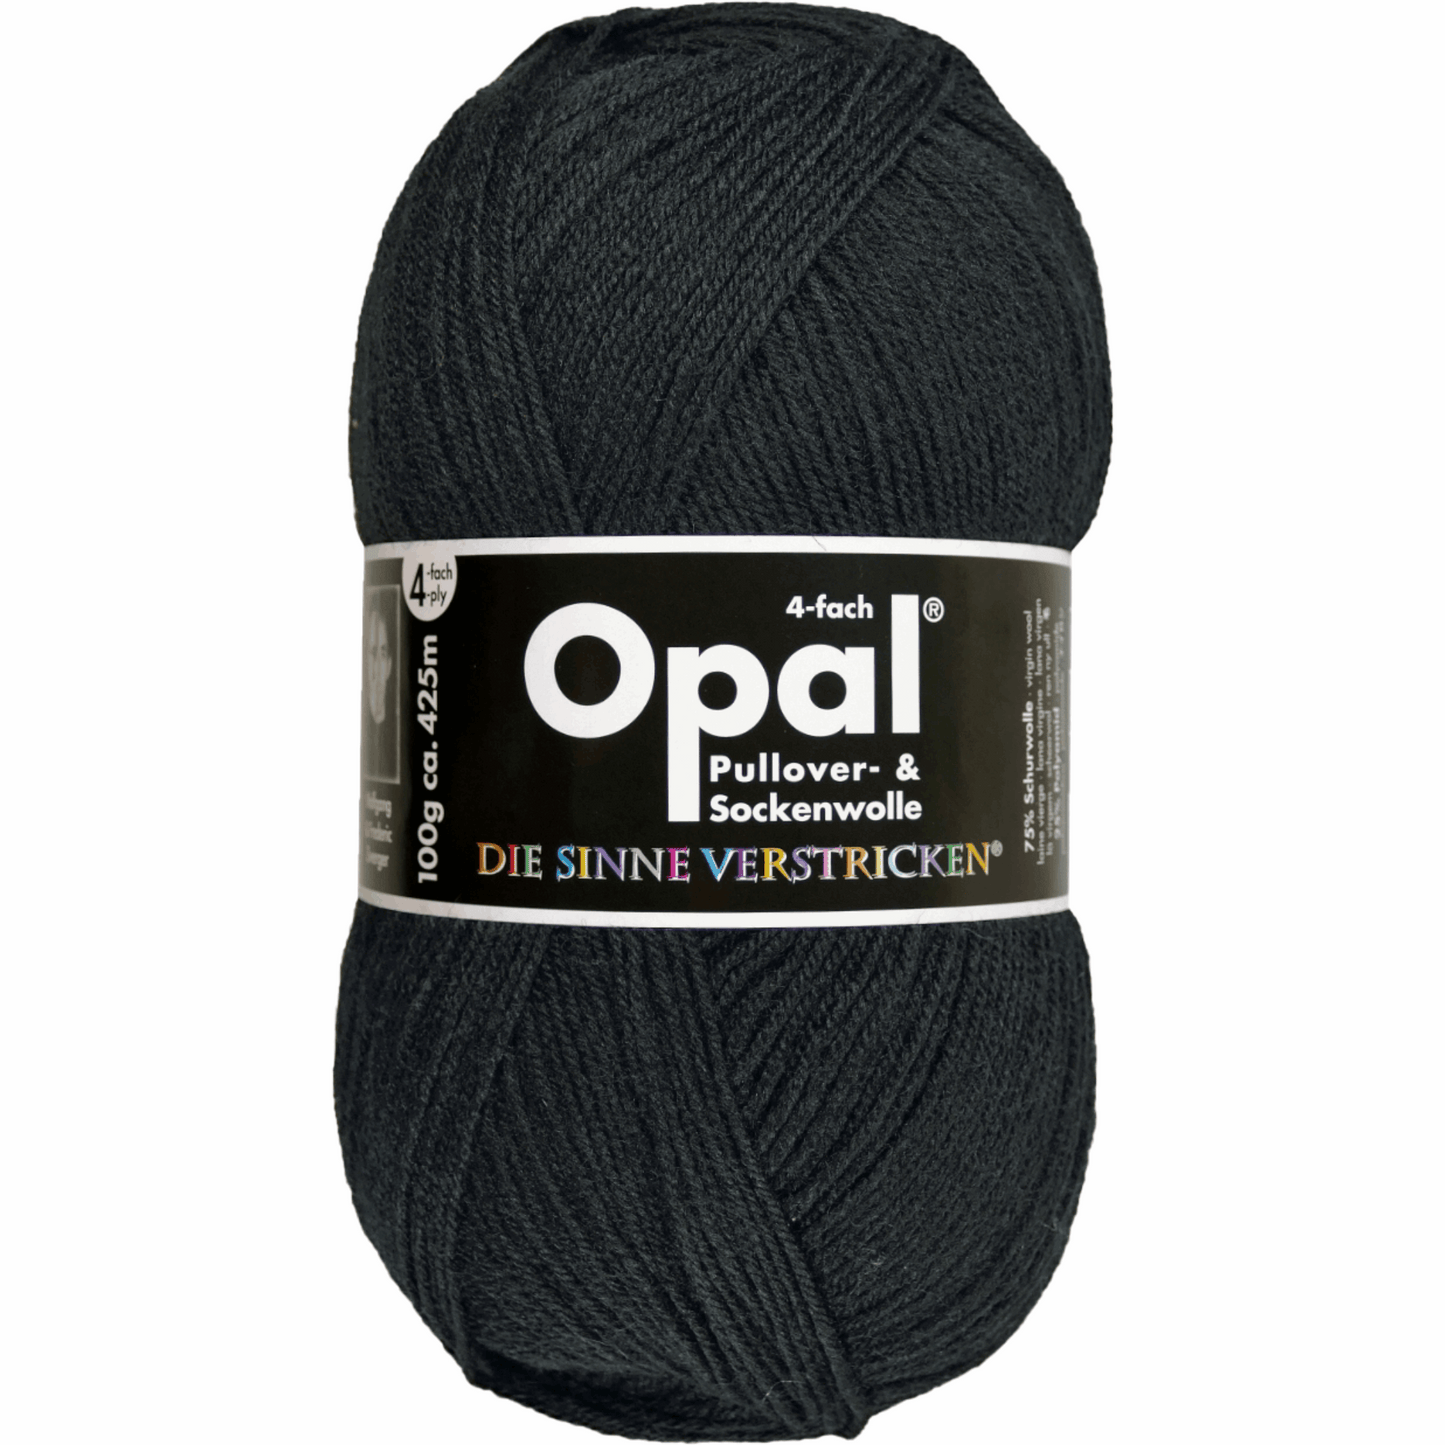 Opal plain 4 threads. 100g 2011/12, 97760, color deep black 2619